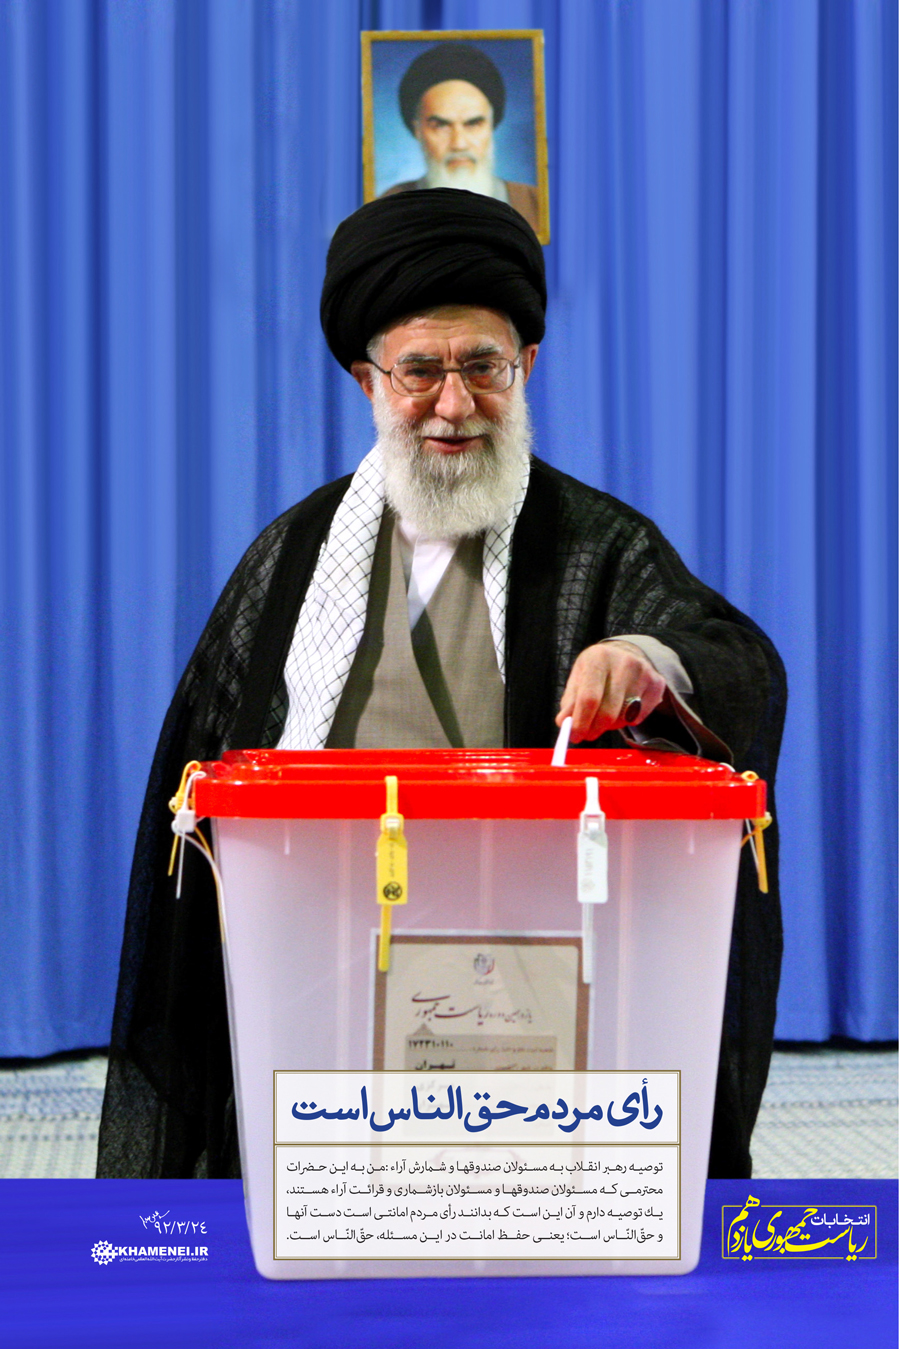 http://farsi.khamenei.ir/ndata/news/22925/C/13920324_0122925.jpg